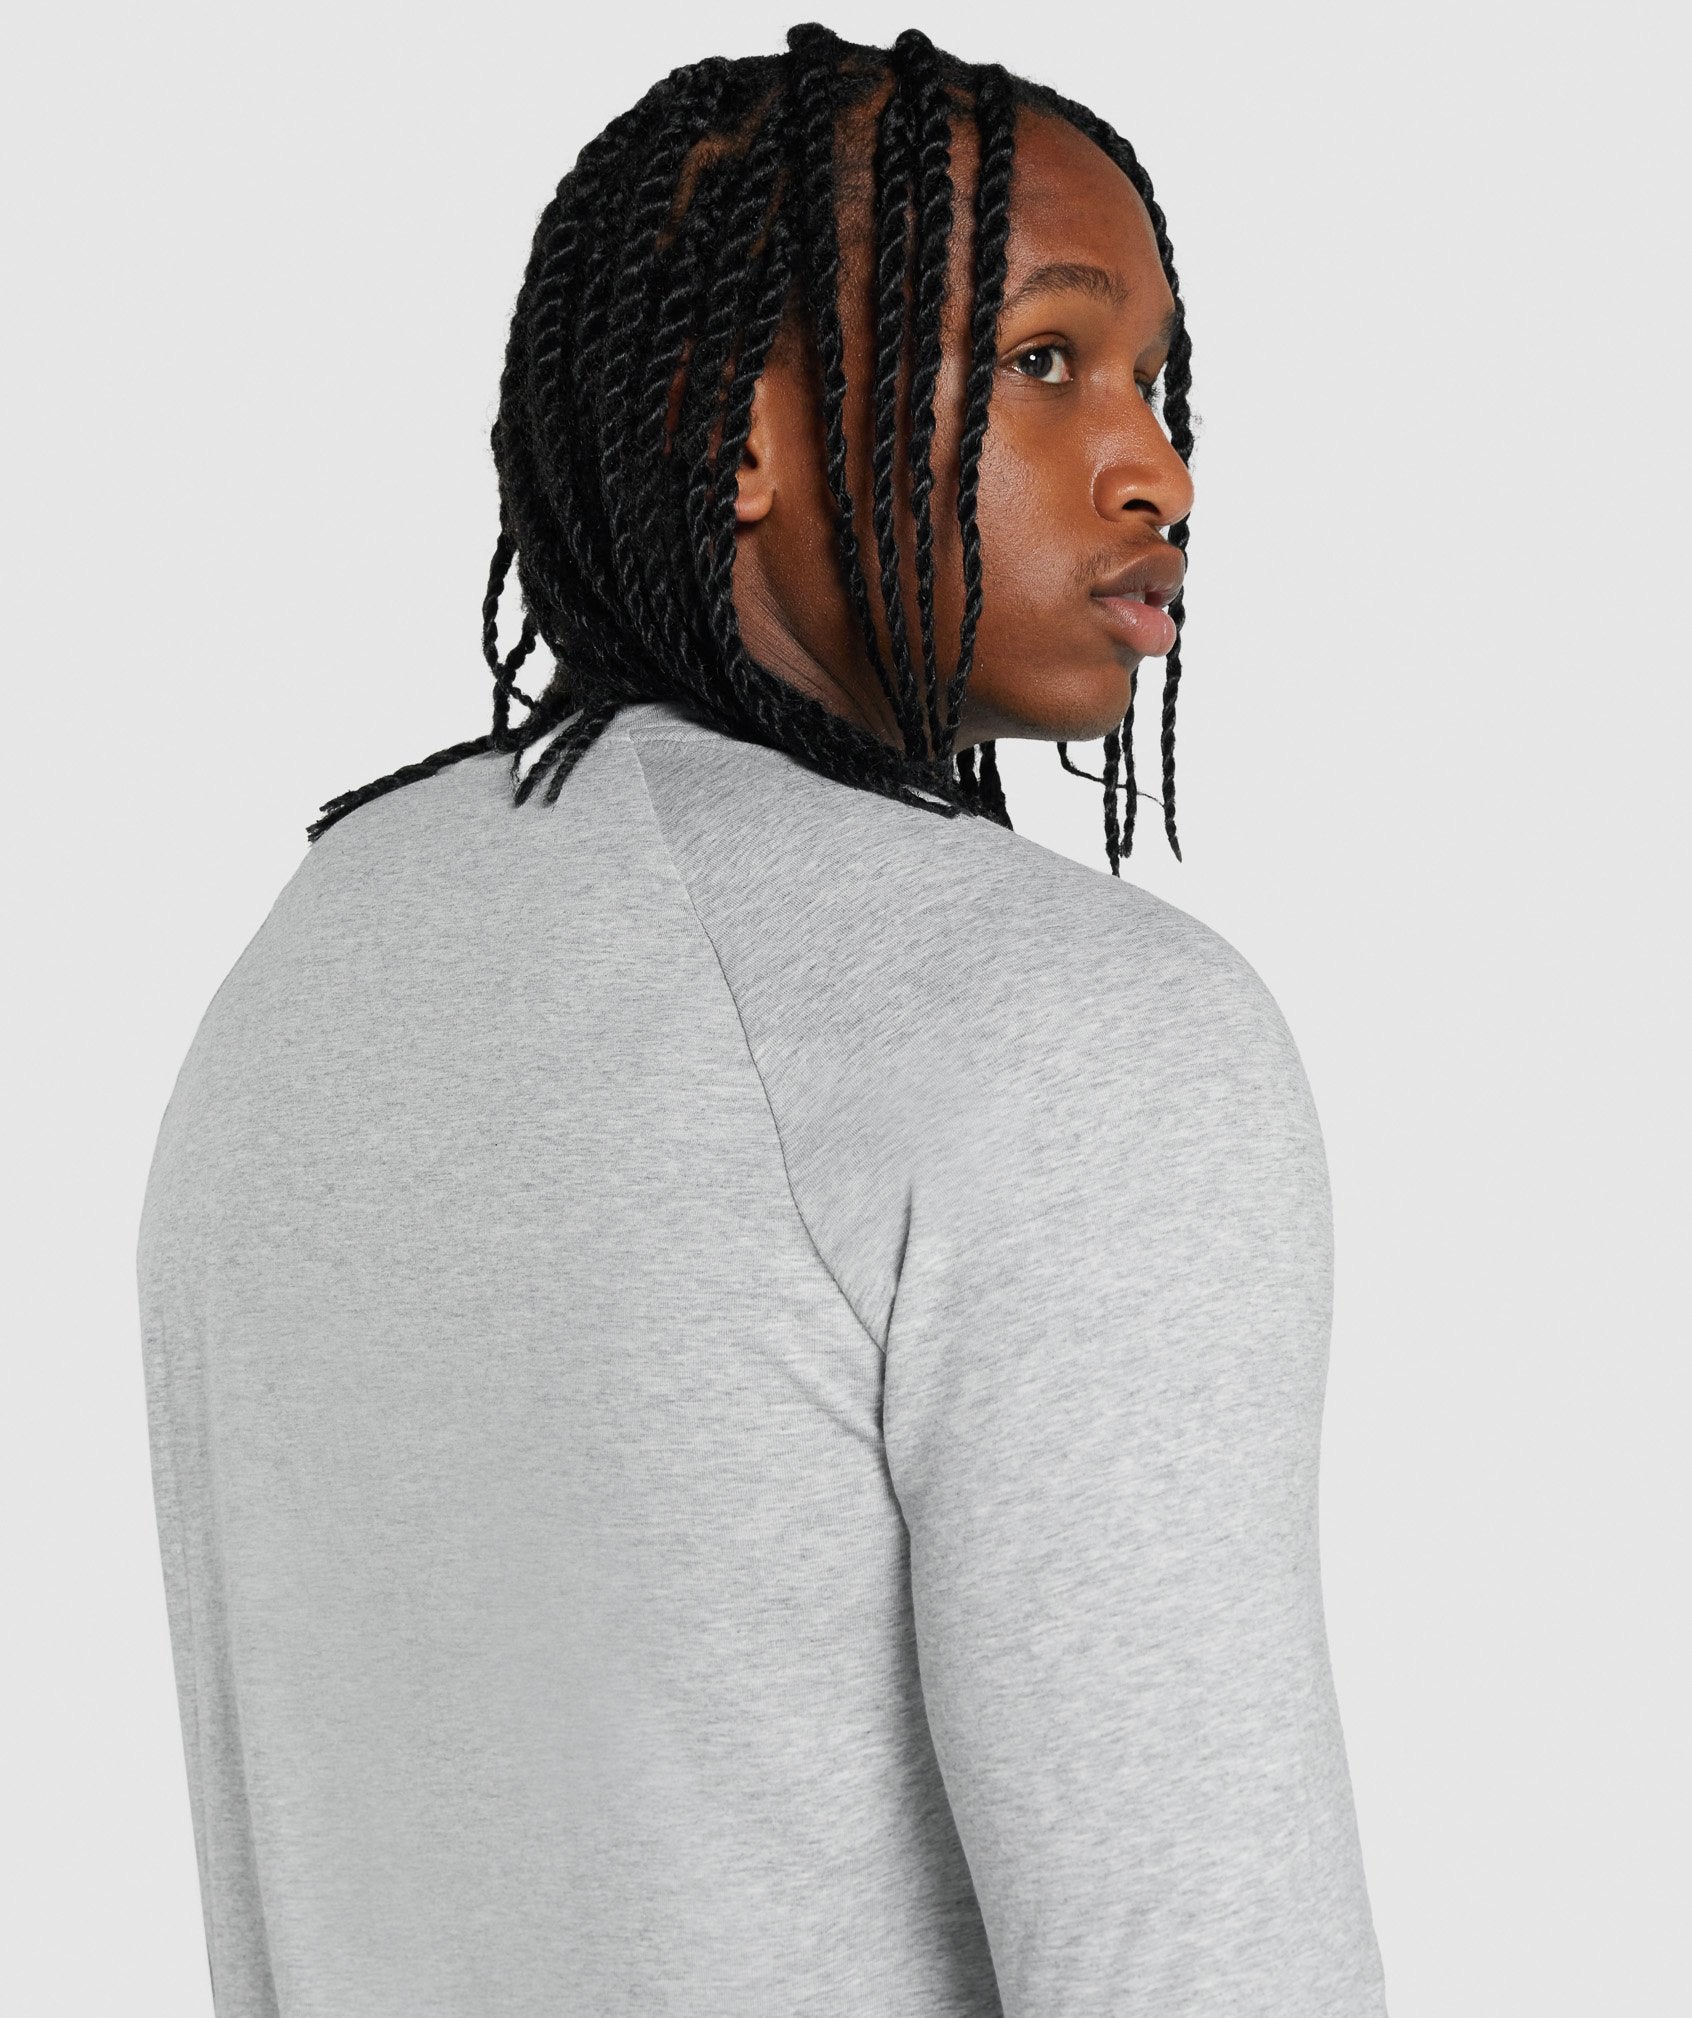 Gymshark Crest Long Sleeve T-Shirt - Light Grey Marl